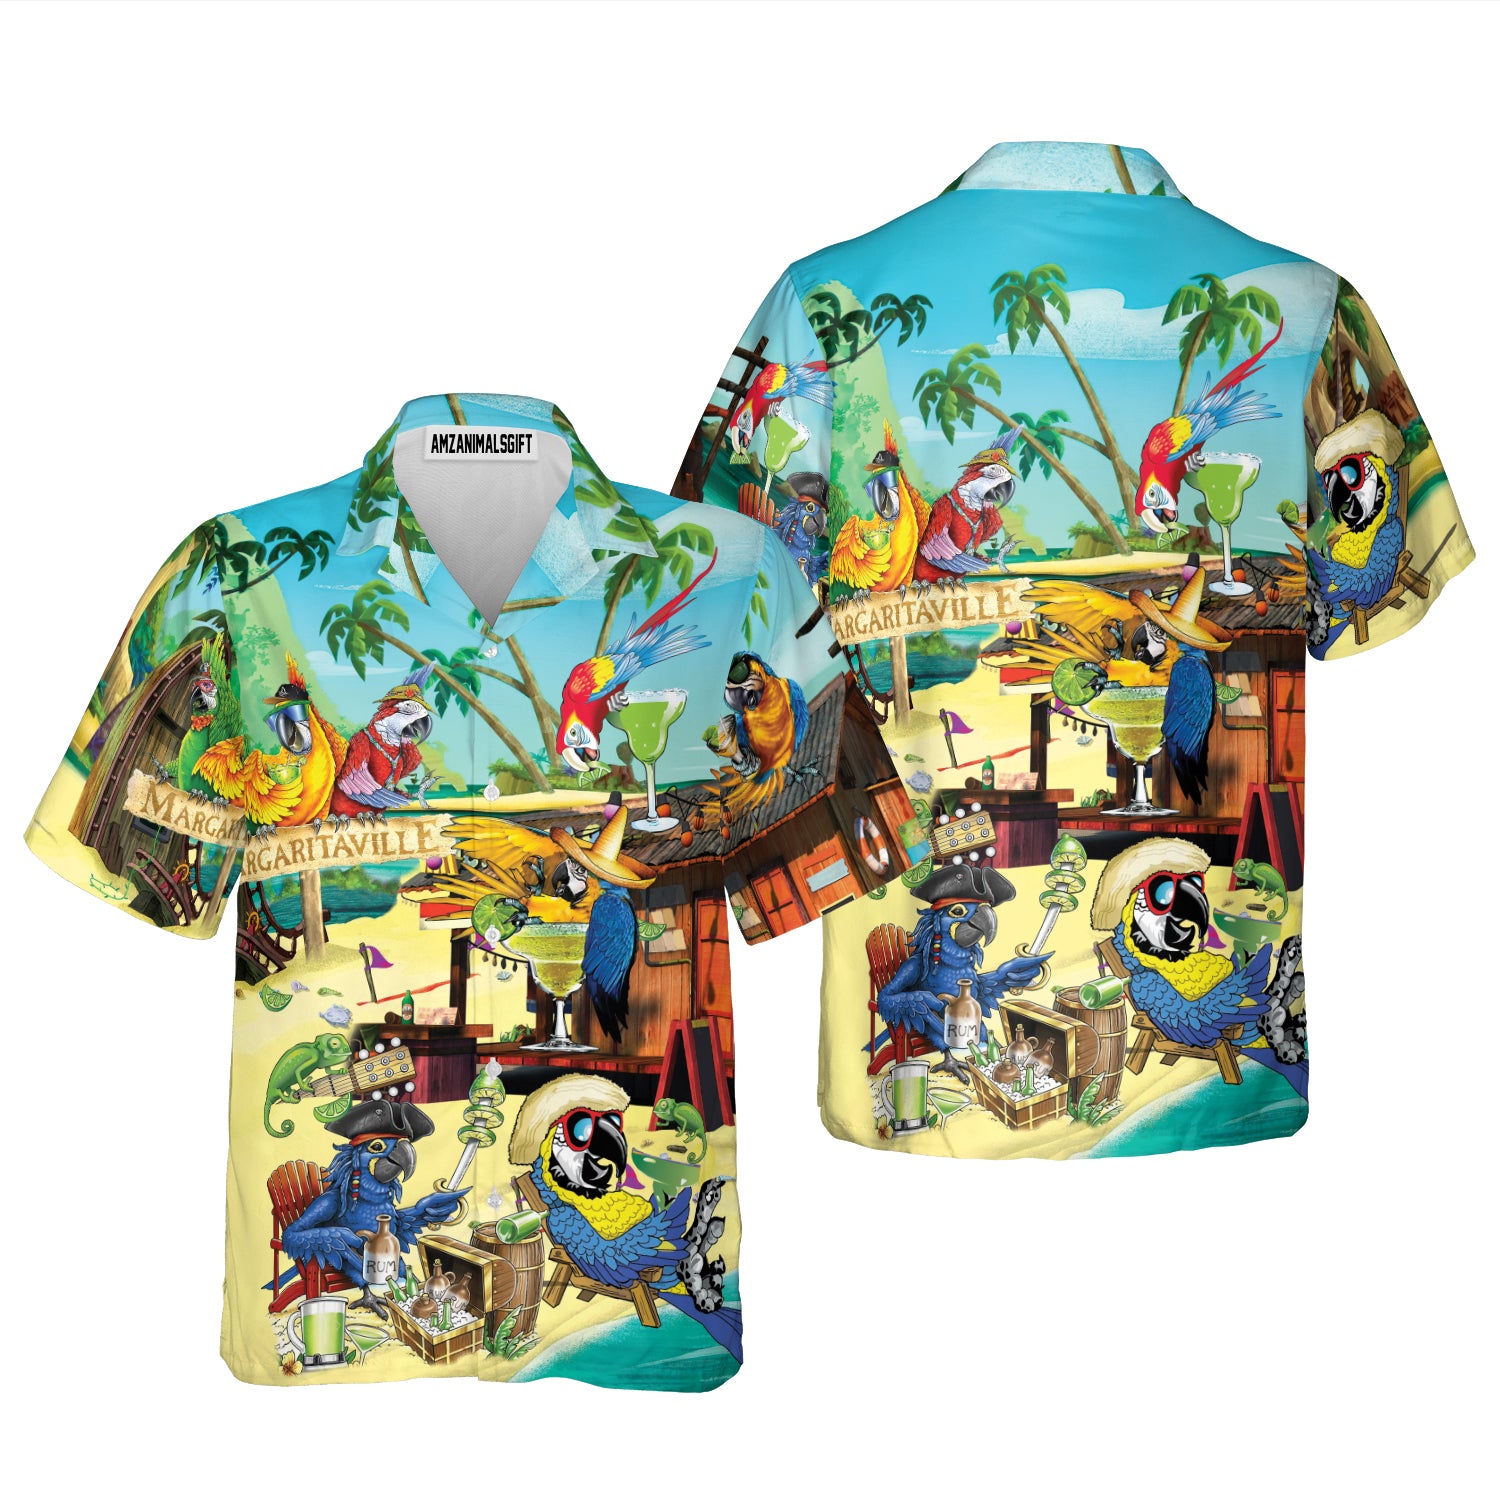 Parrot Aloha Hawaiian Shirt - Margaritaville Hawaiian Shirt, Funny Parrot In Summer Beach Party Hawaiian Shirt For Men, Women, Parrot Lover